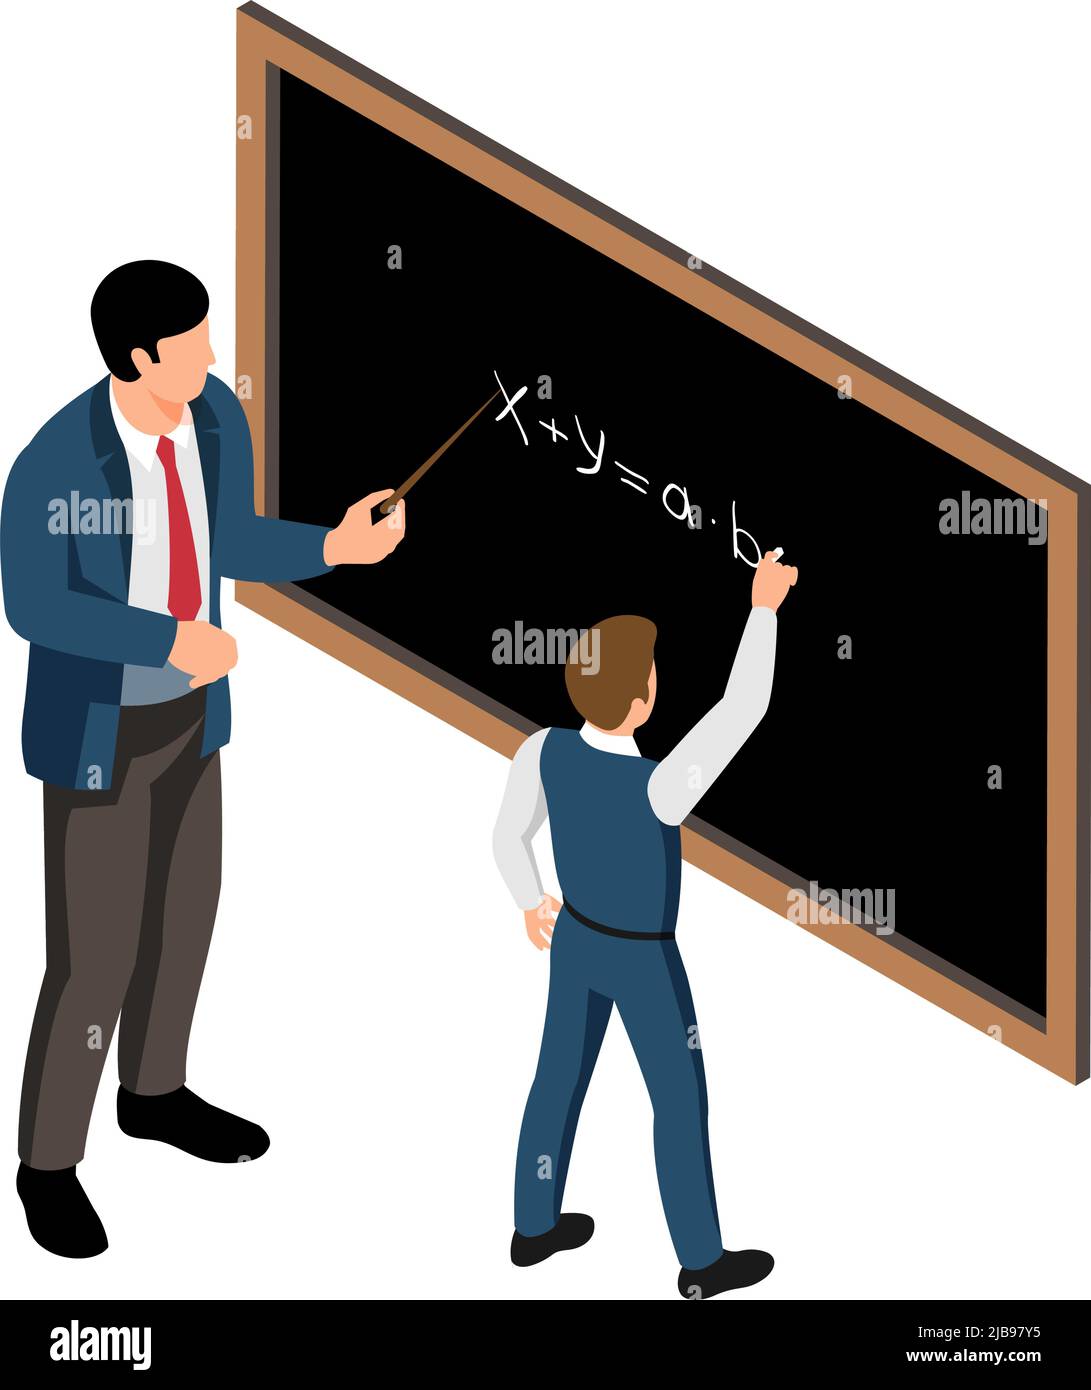 Isometrische Schule Lektion Symbol mit männlichen Lehrer und Schüler tun Summen an Bord Vektor-Illustration Stock Vektor